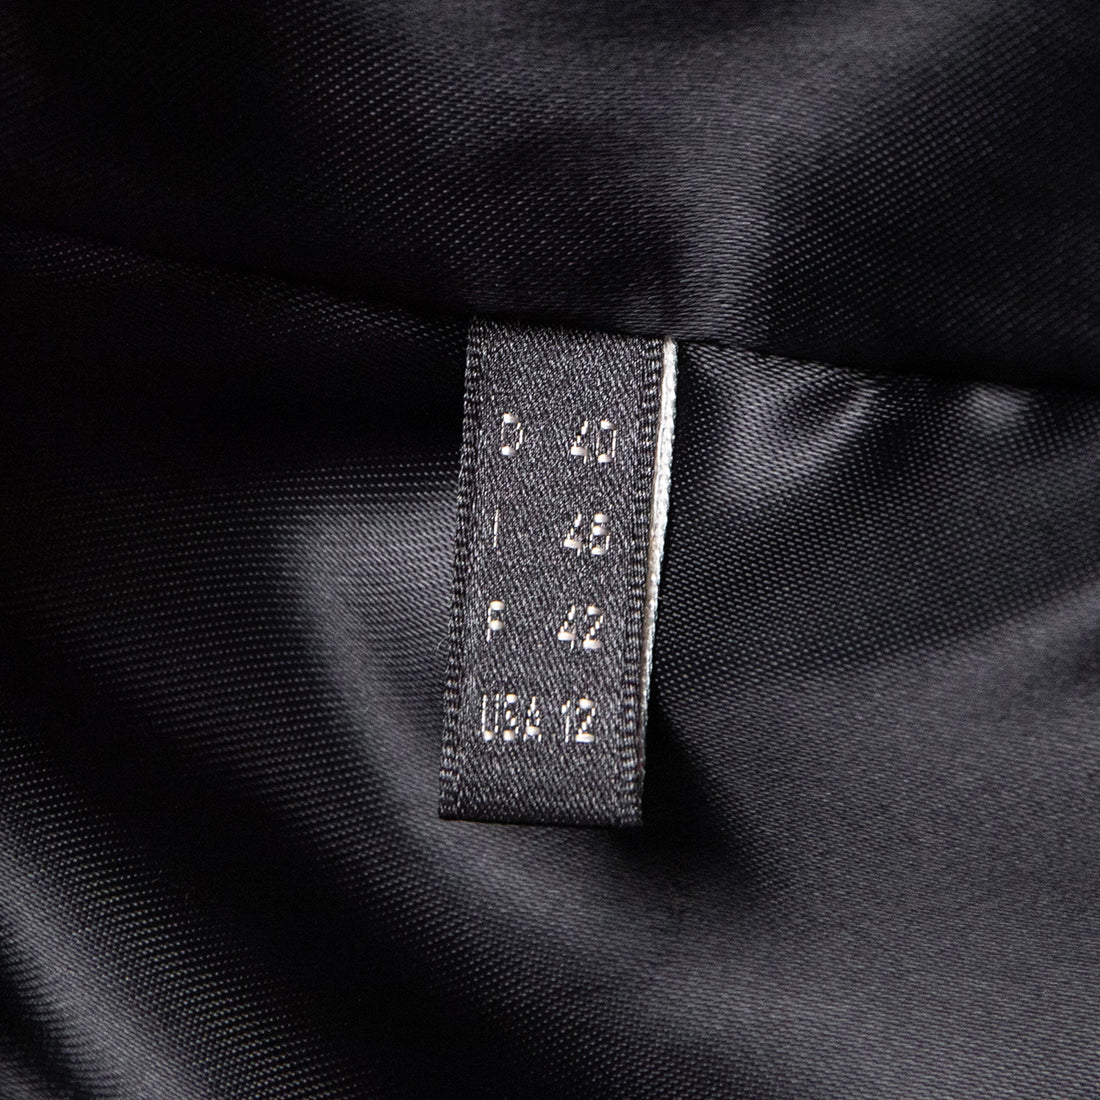 Catherine Khan Klassisch geschnittener Blazermantel aus Leder mit aufgesetzen Taschen